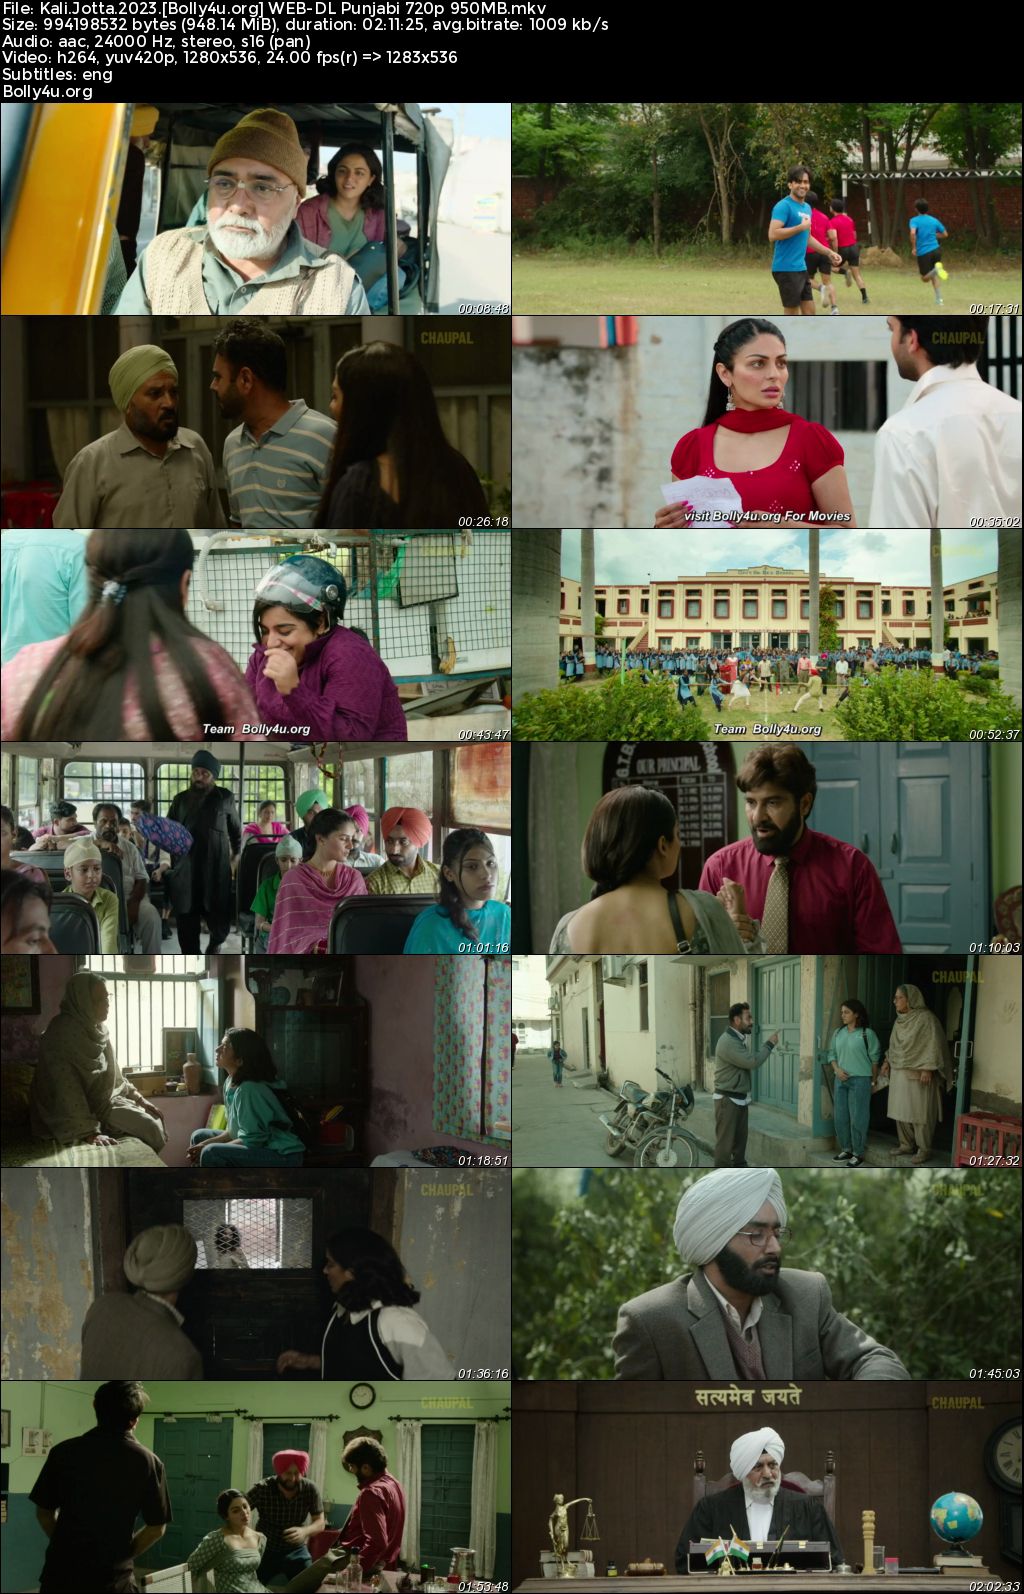 Kali Jotta 2023 WEB-DL Punjabi Full Movie Download 1080p 720p 480p